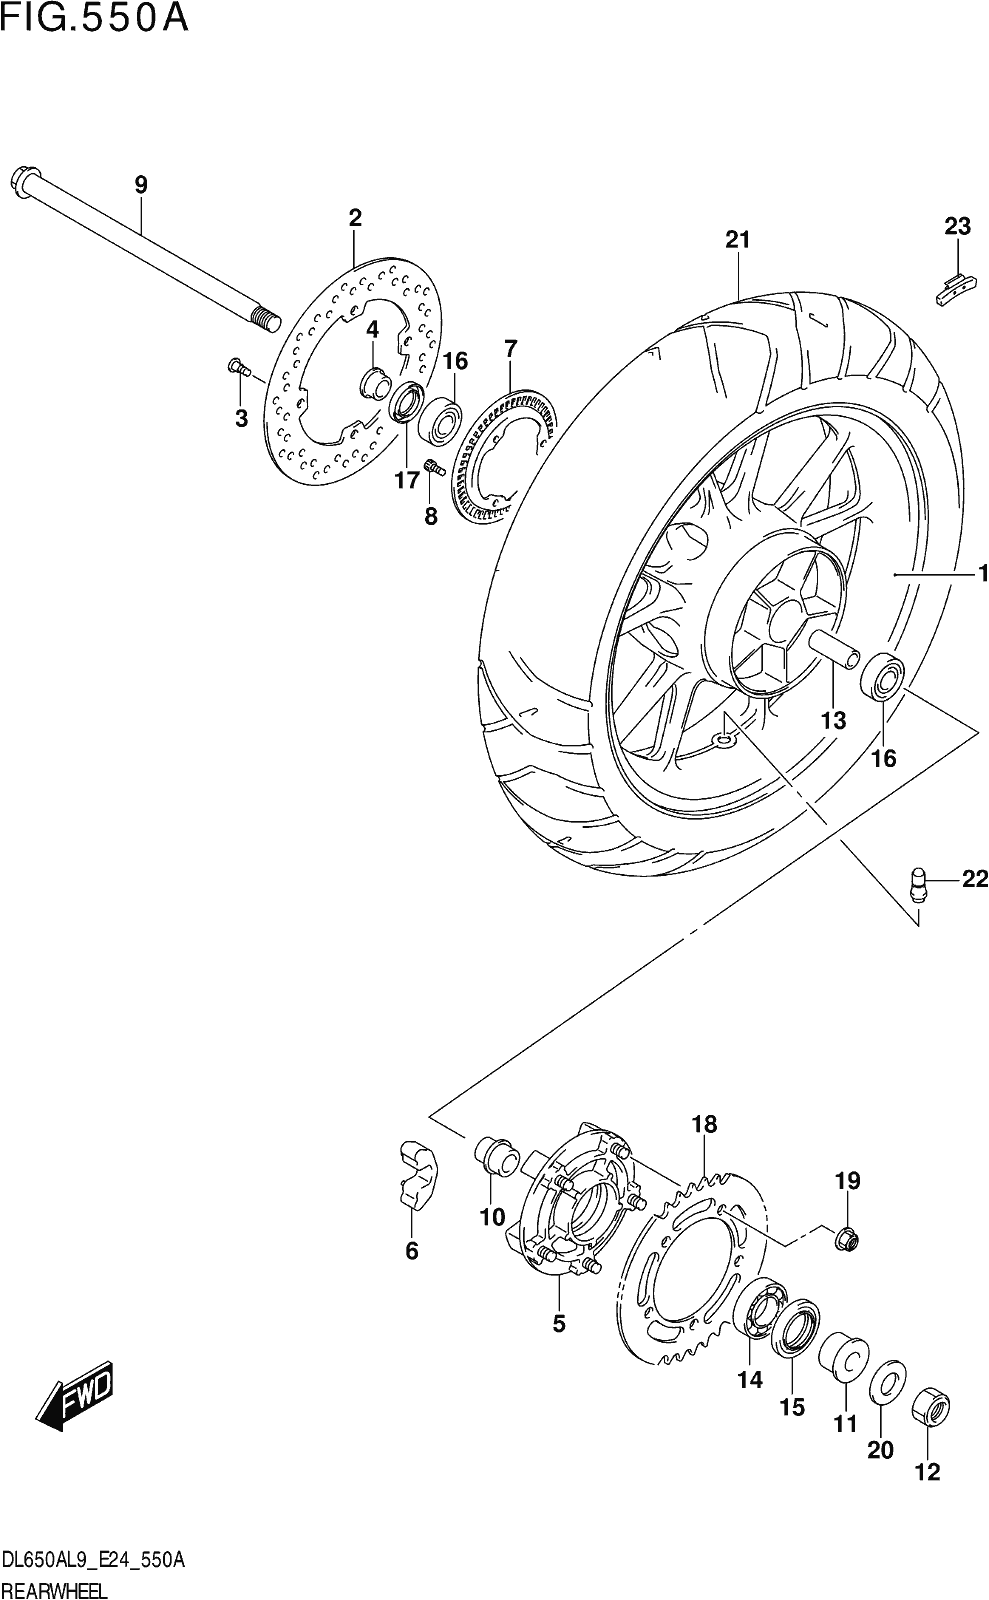 Fig.550a Rear Wheel (dl650a,dl650aue)